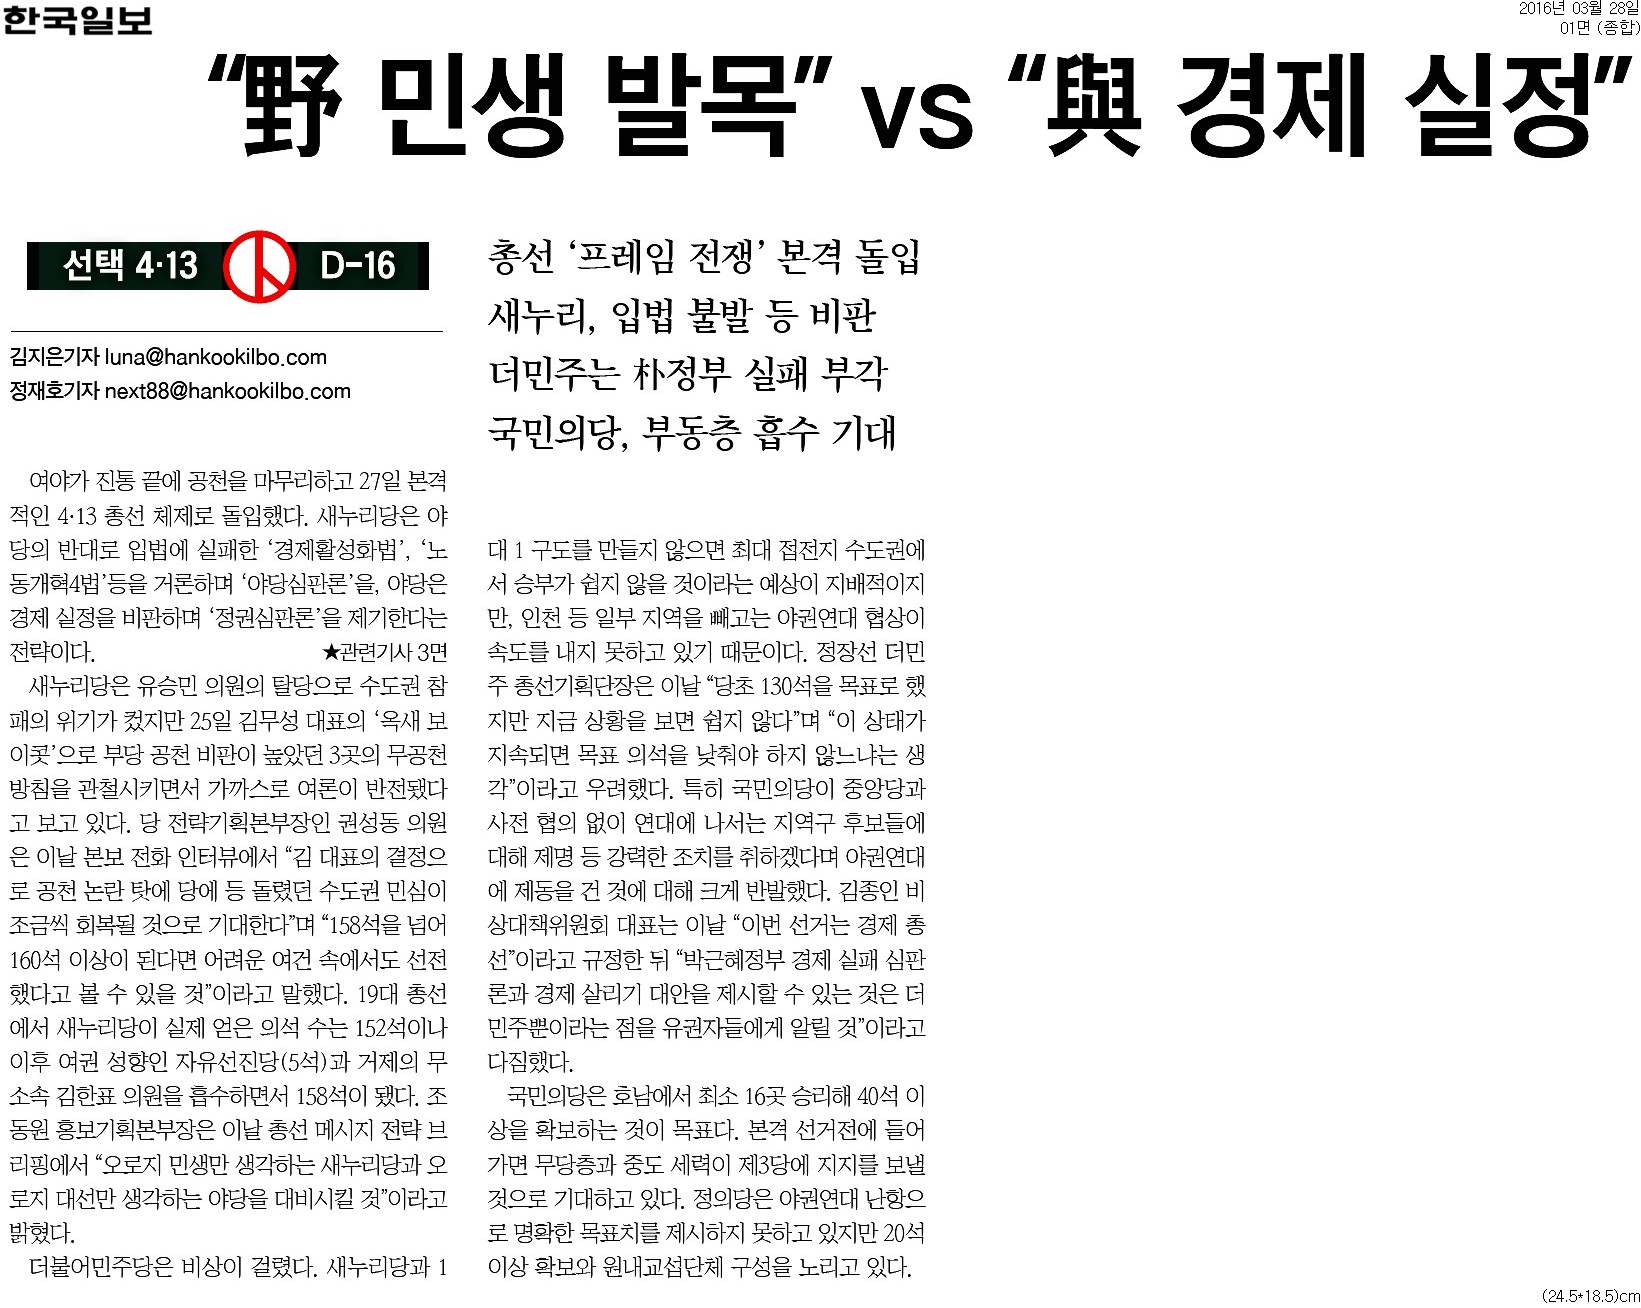 <한국일보> 2016년 3월 28일자 1면